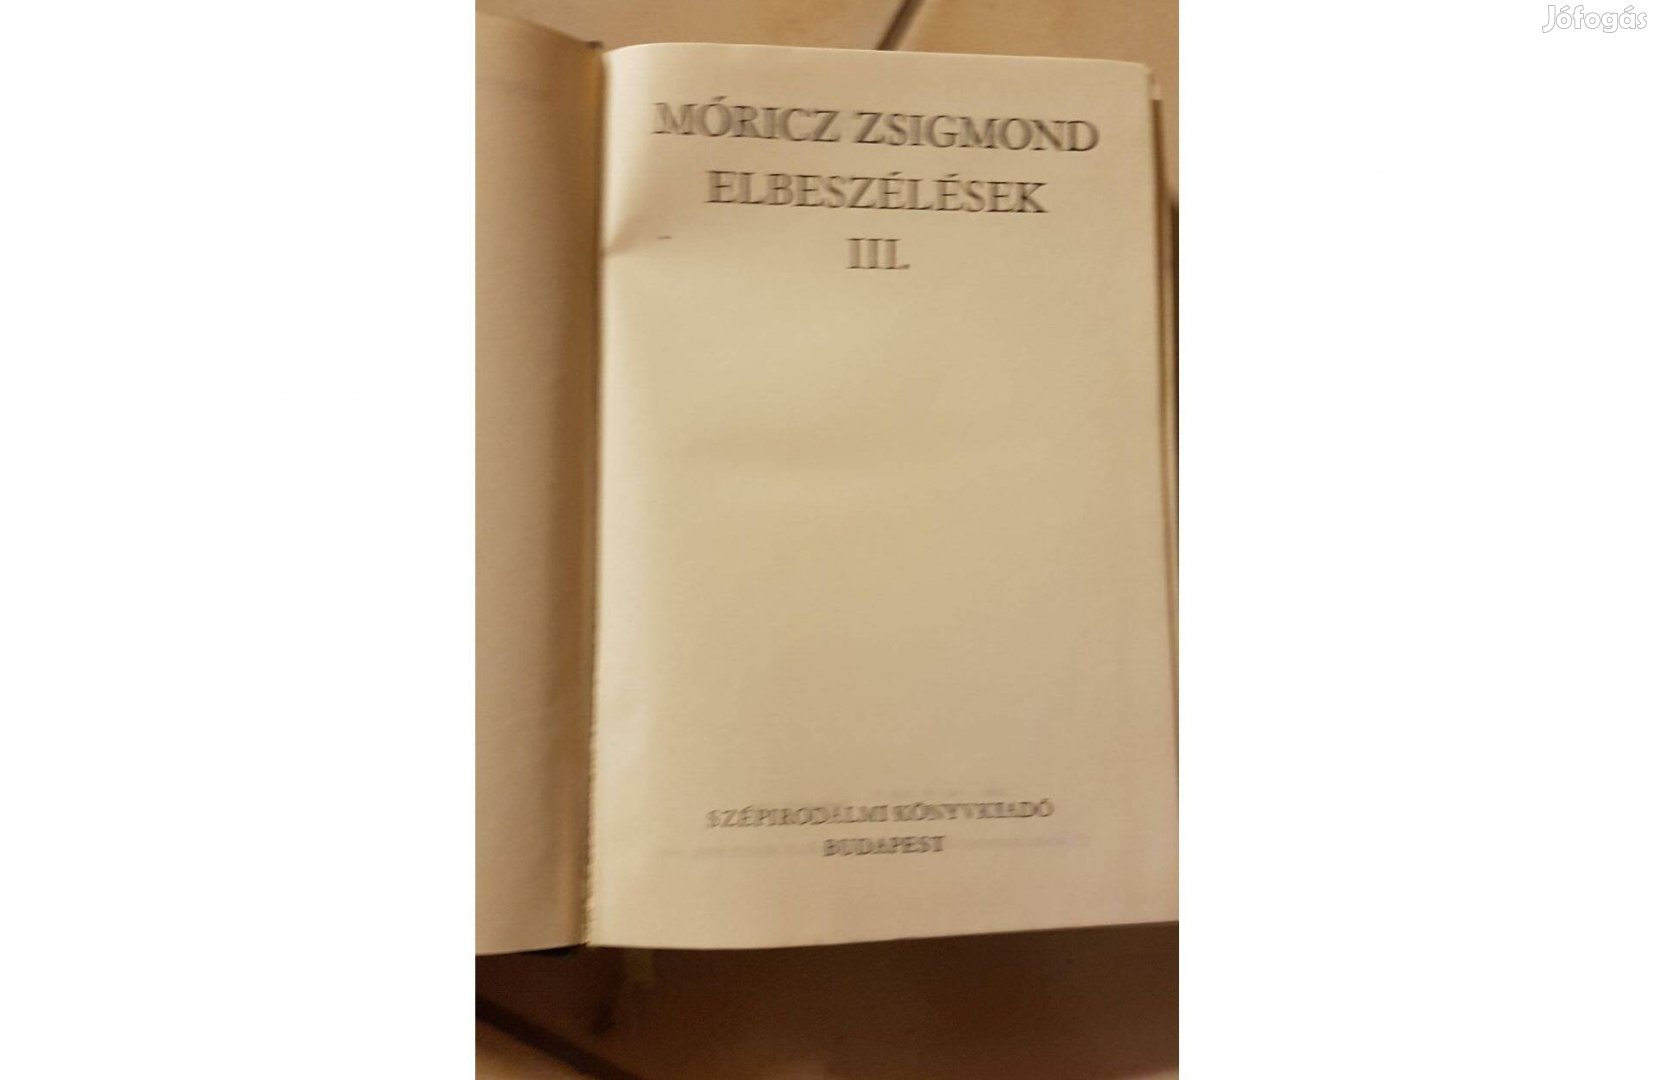 Móricz Zsigmond - Elbeszélések III